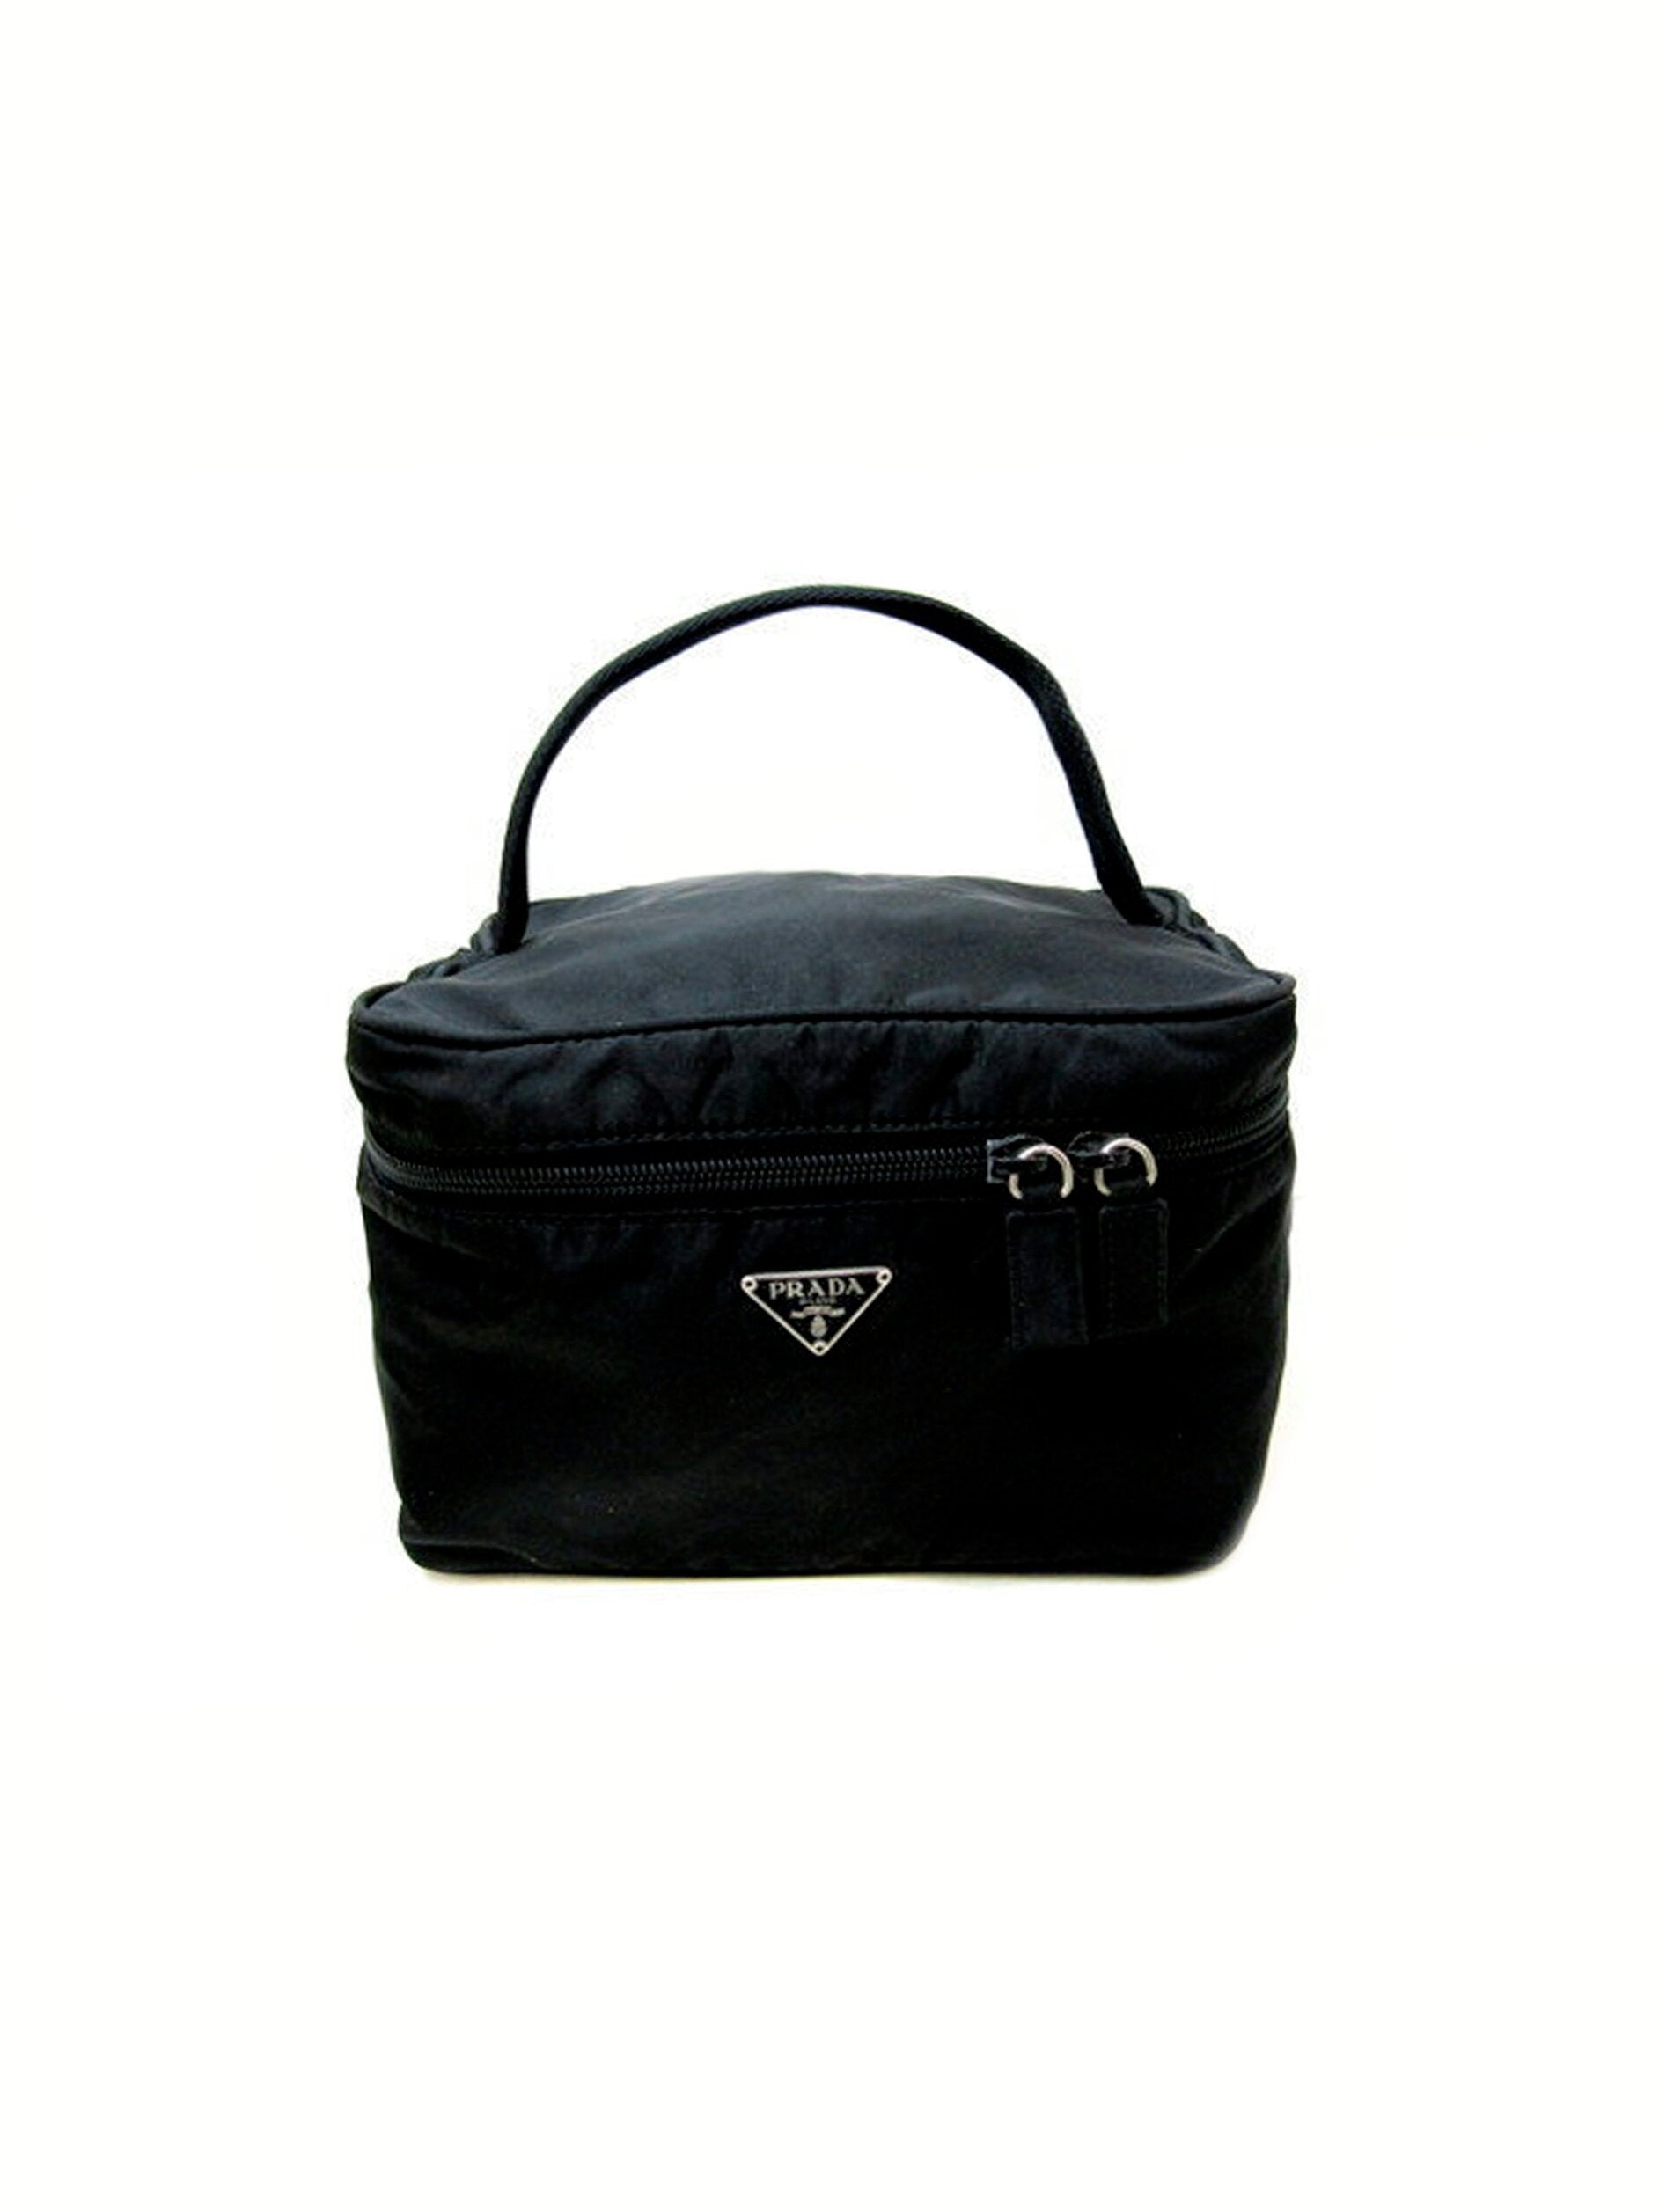 Prada 2000s Nylon Black Vanity Bag